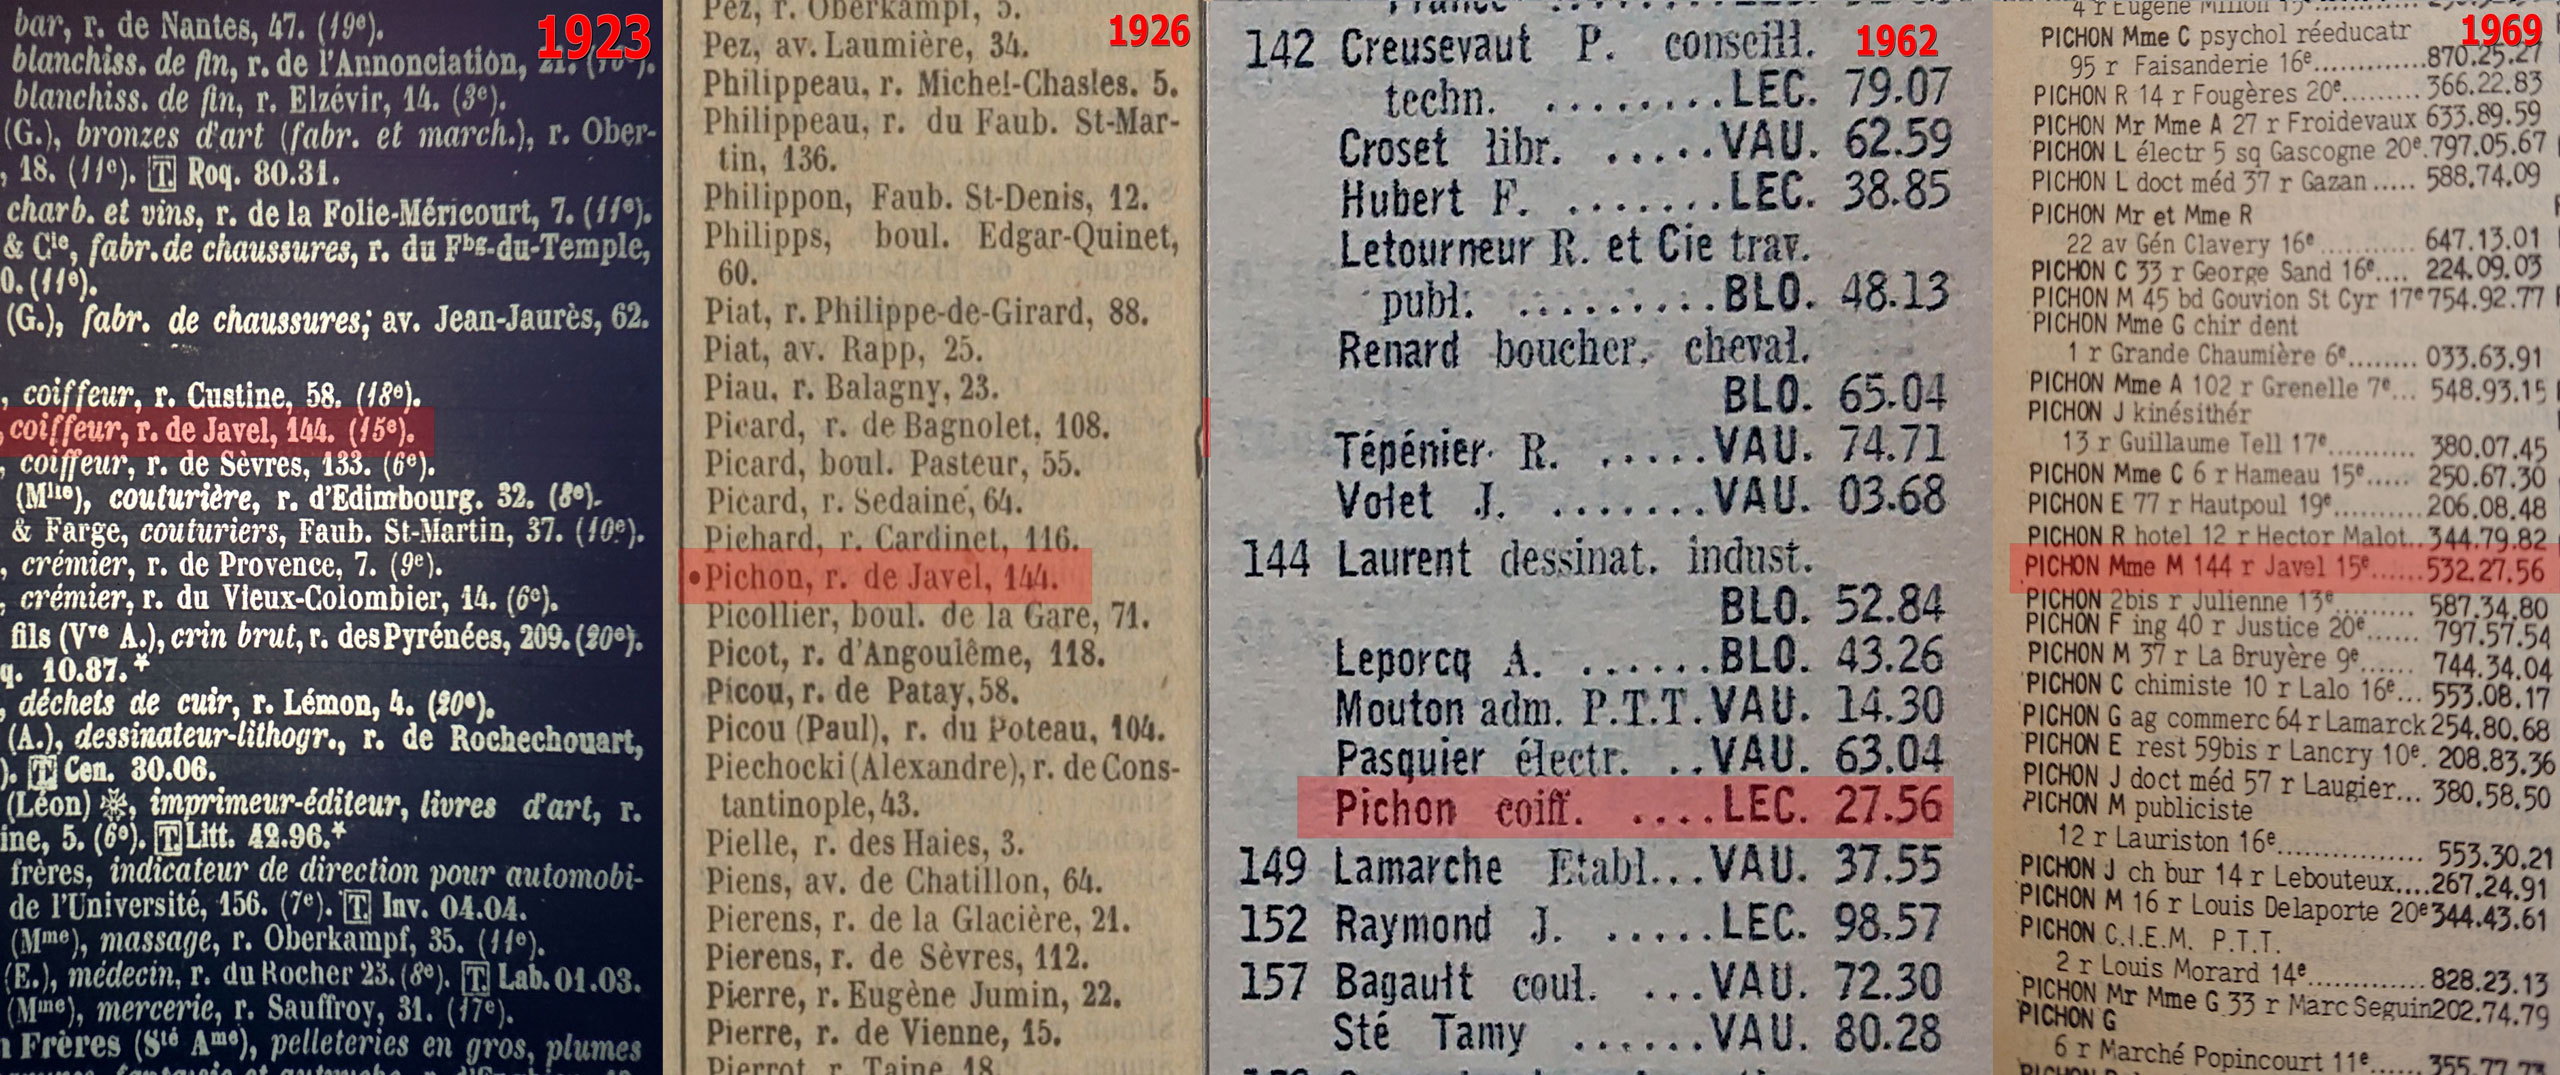 Les annuaires des abonnés au téléphone montrent que Charles Pichon exerça la profession de coiffeur depuis l’année 1922 jusqu’à sa mort, en 1968. En 1969, c’est sa fille, Marcelle Pichon, qui reprend le numéro de téléphone, mais le salon de coiffure n’est plus mentionné.<br><br>